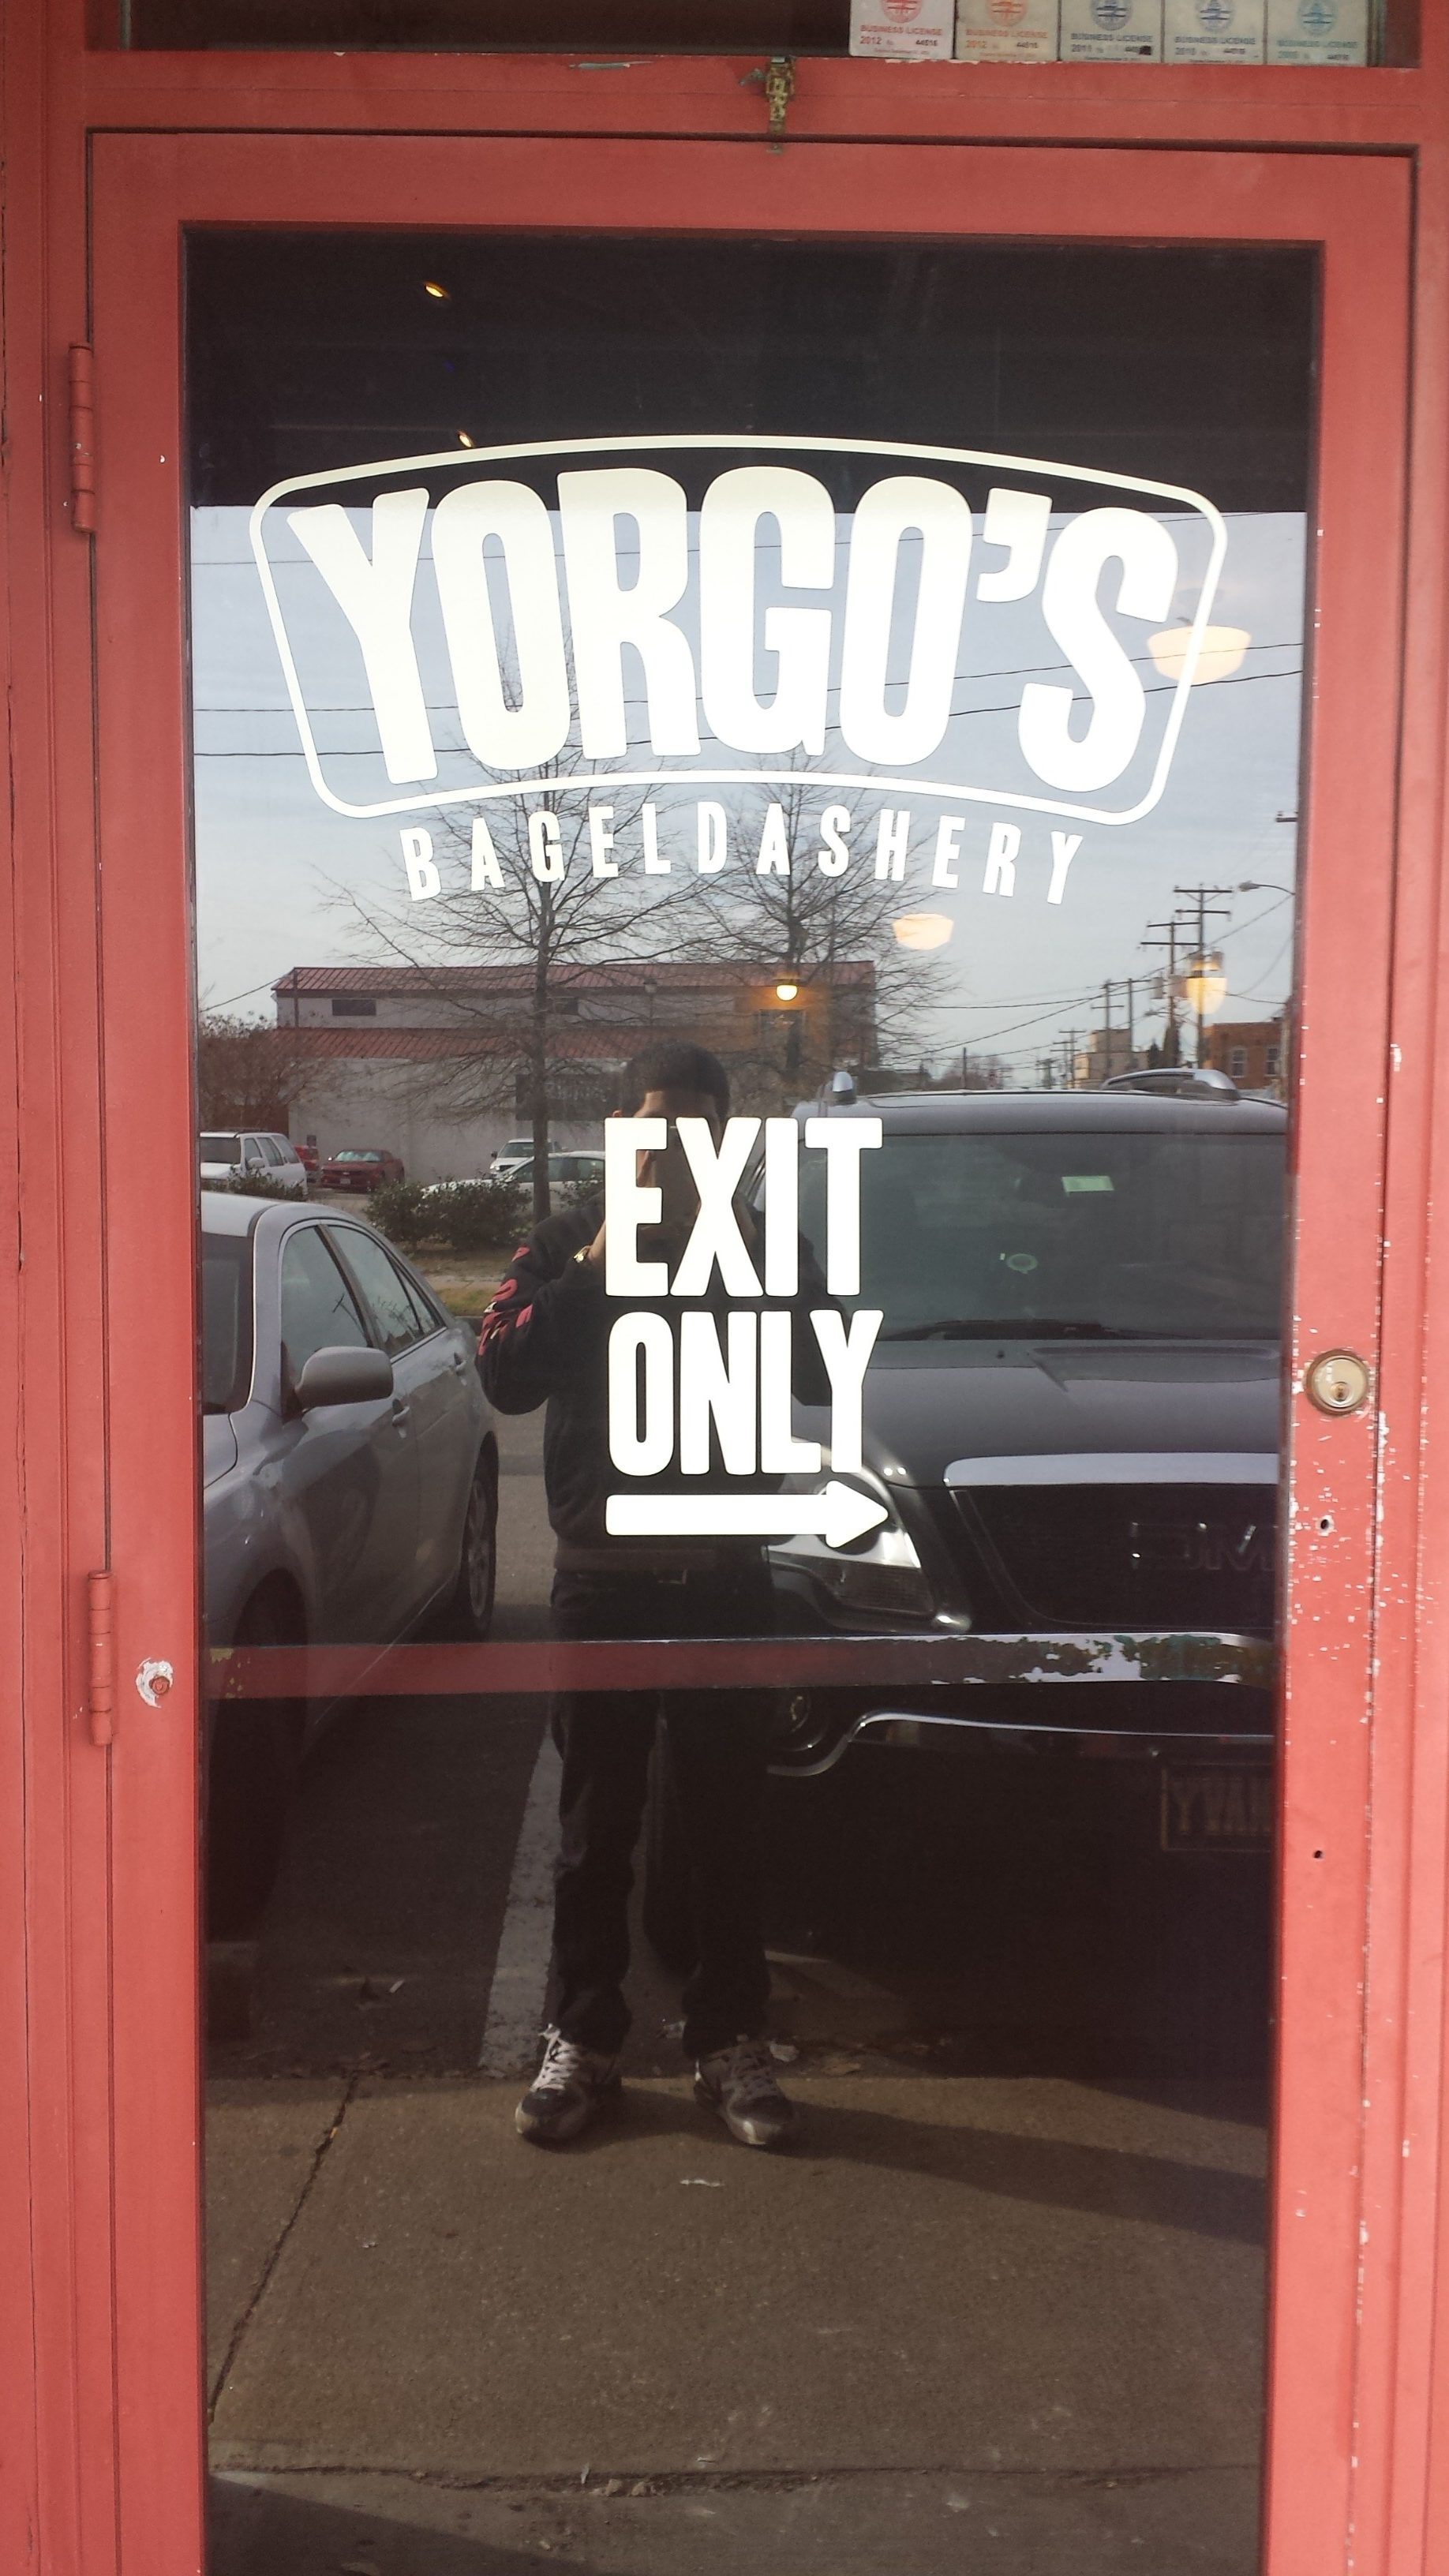 Yorgo's door graphics